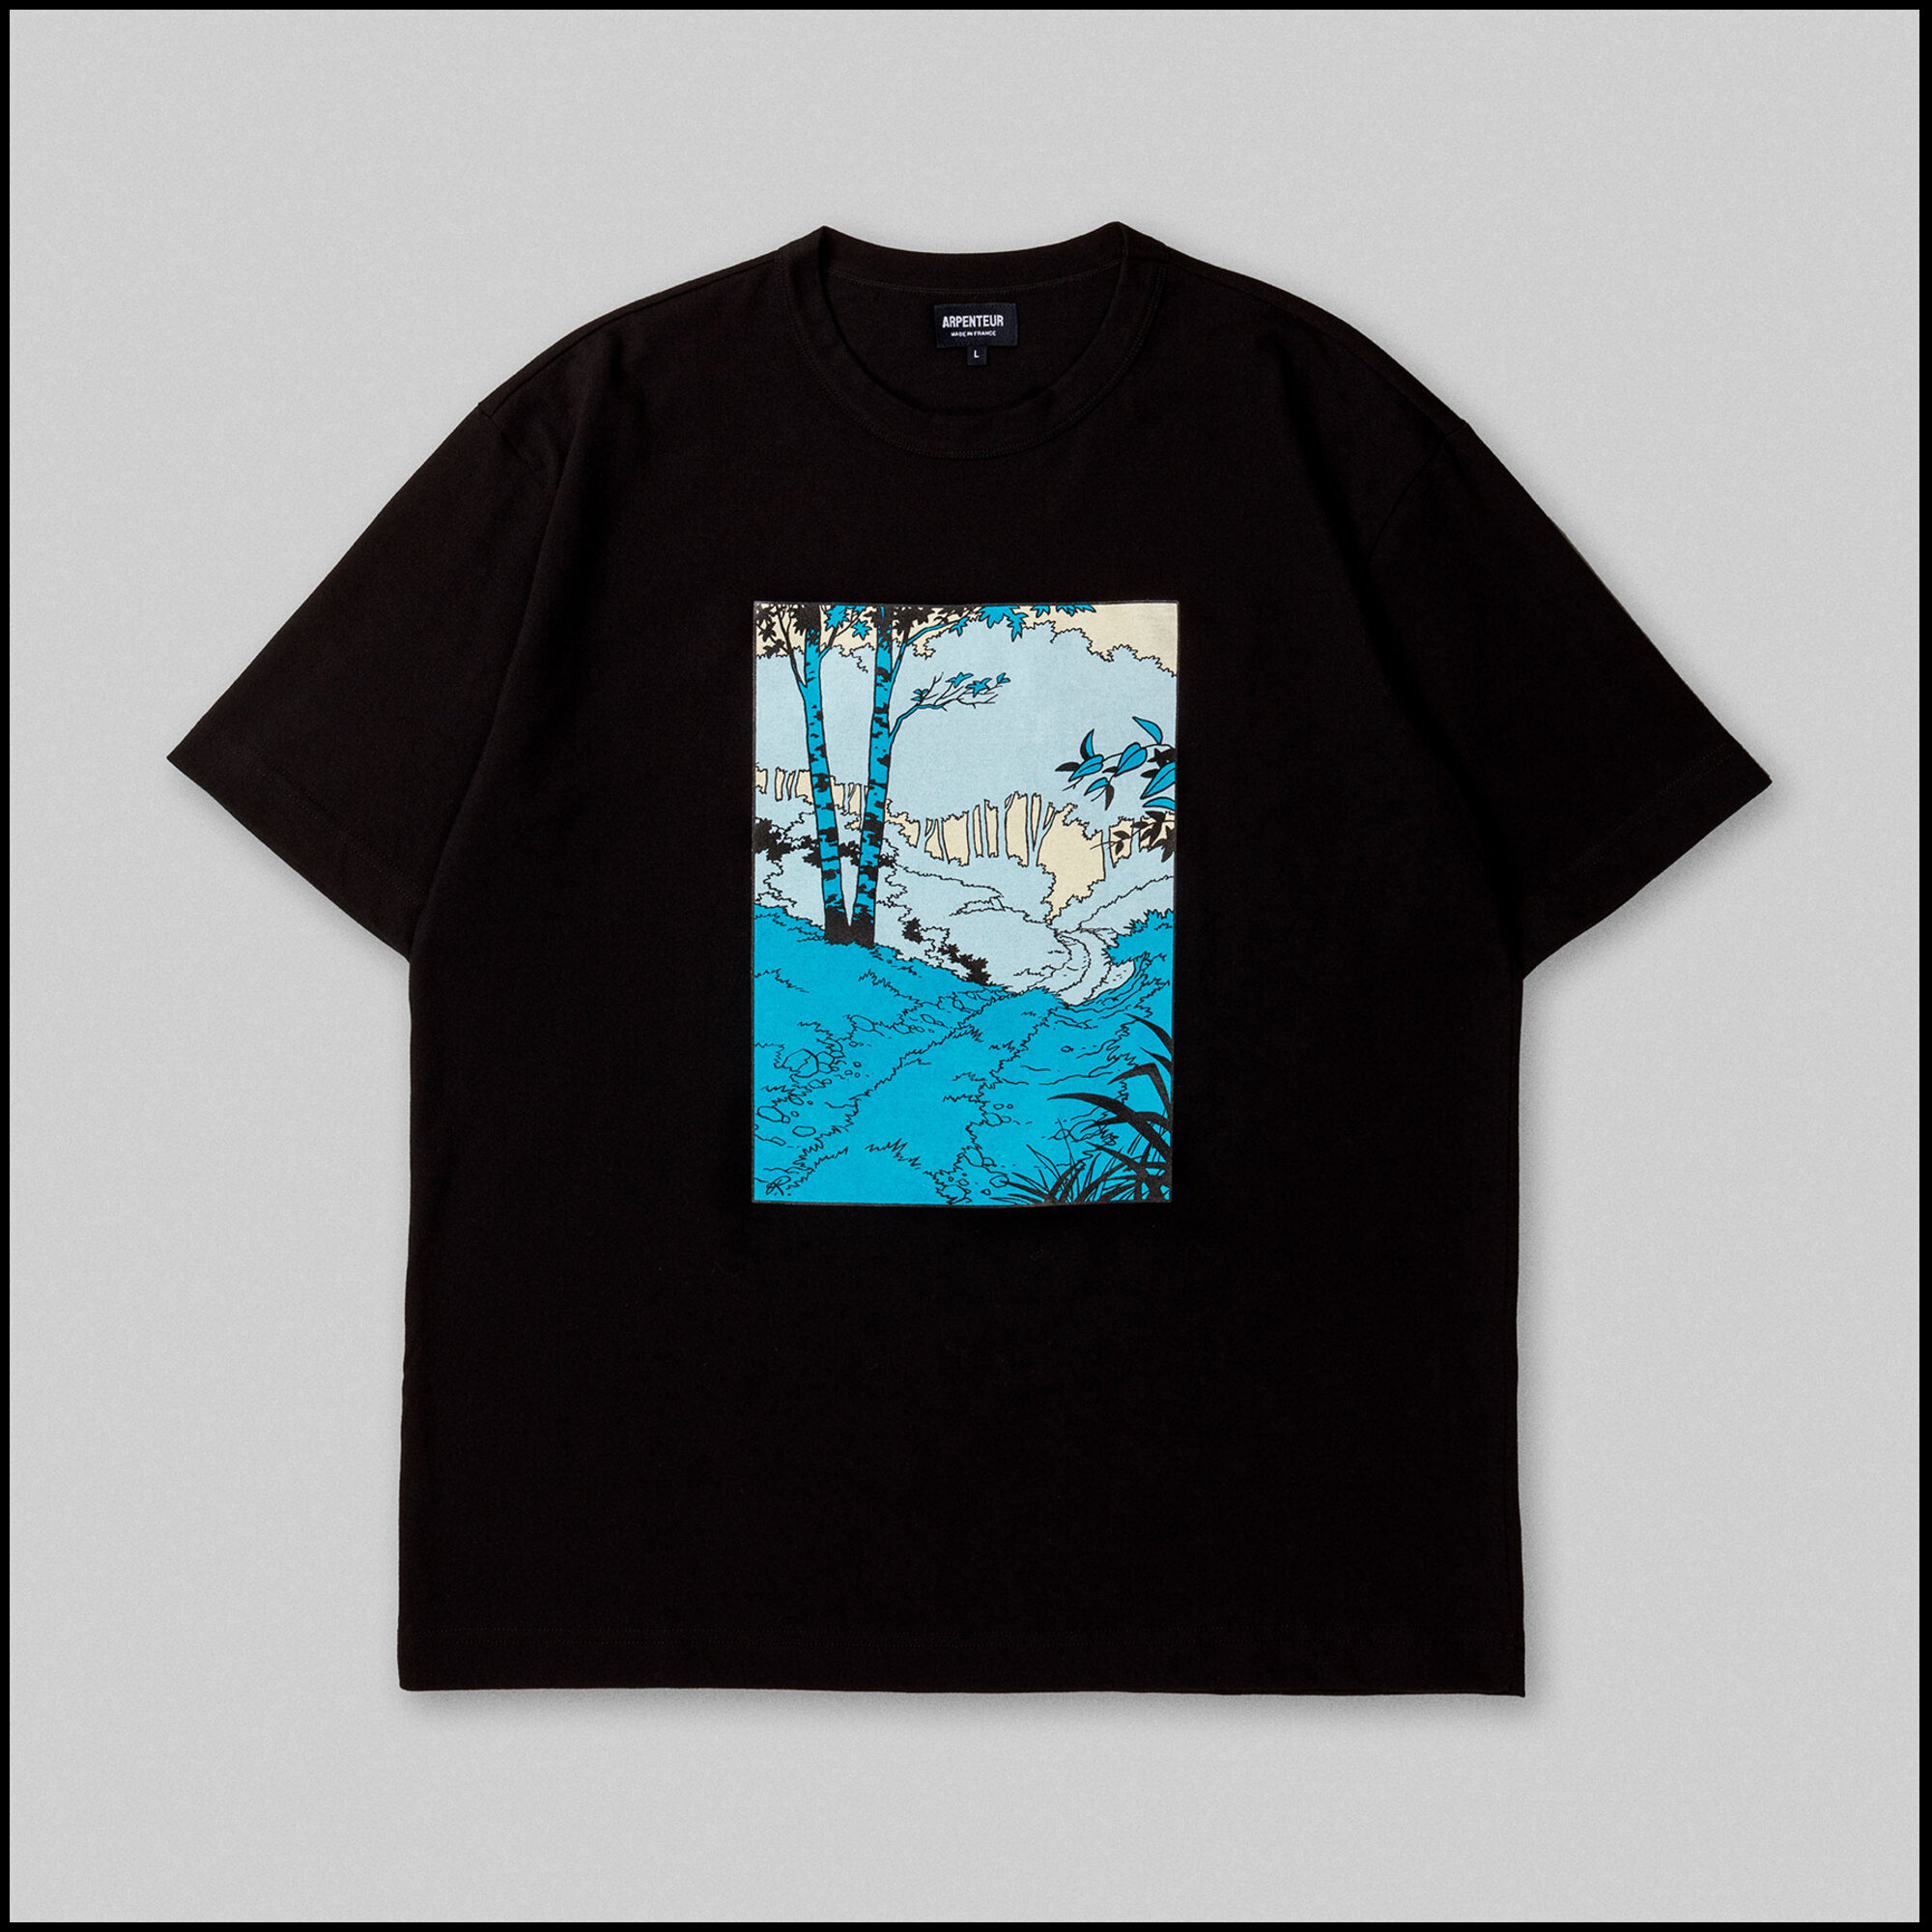 GRAPHIQUE T-shirt by Arpenteur in Blue woods color